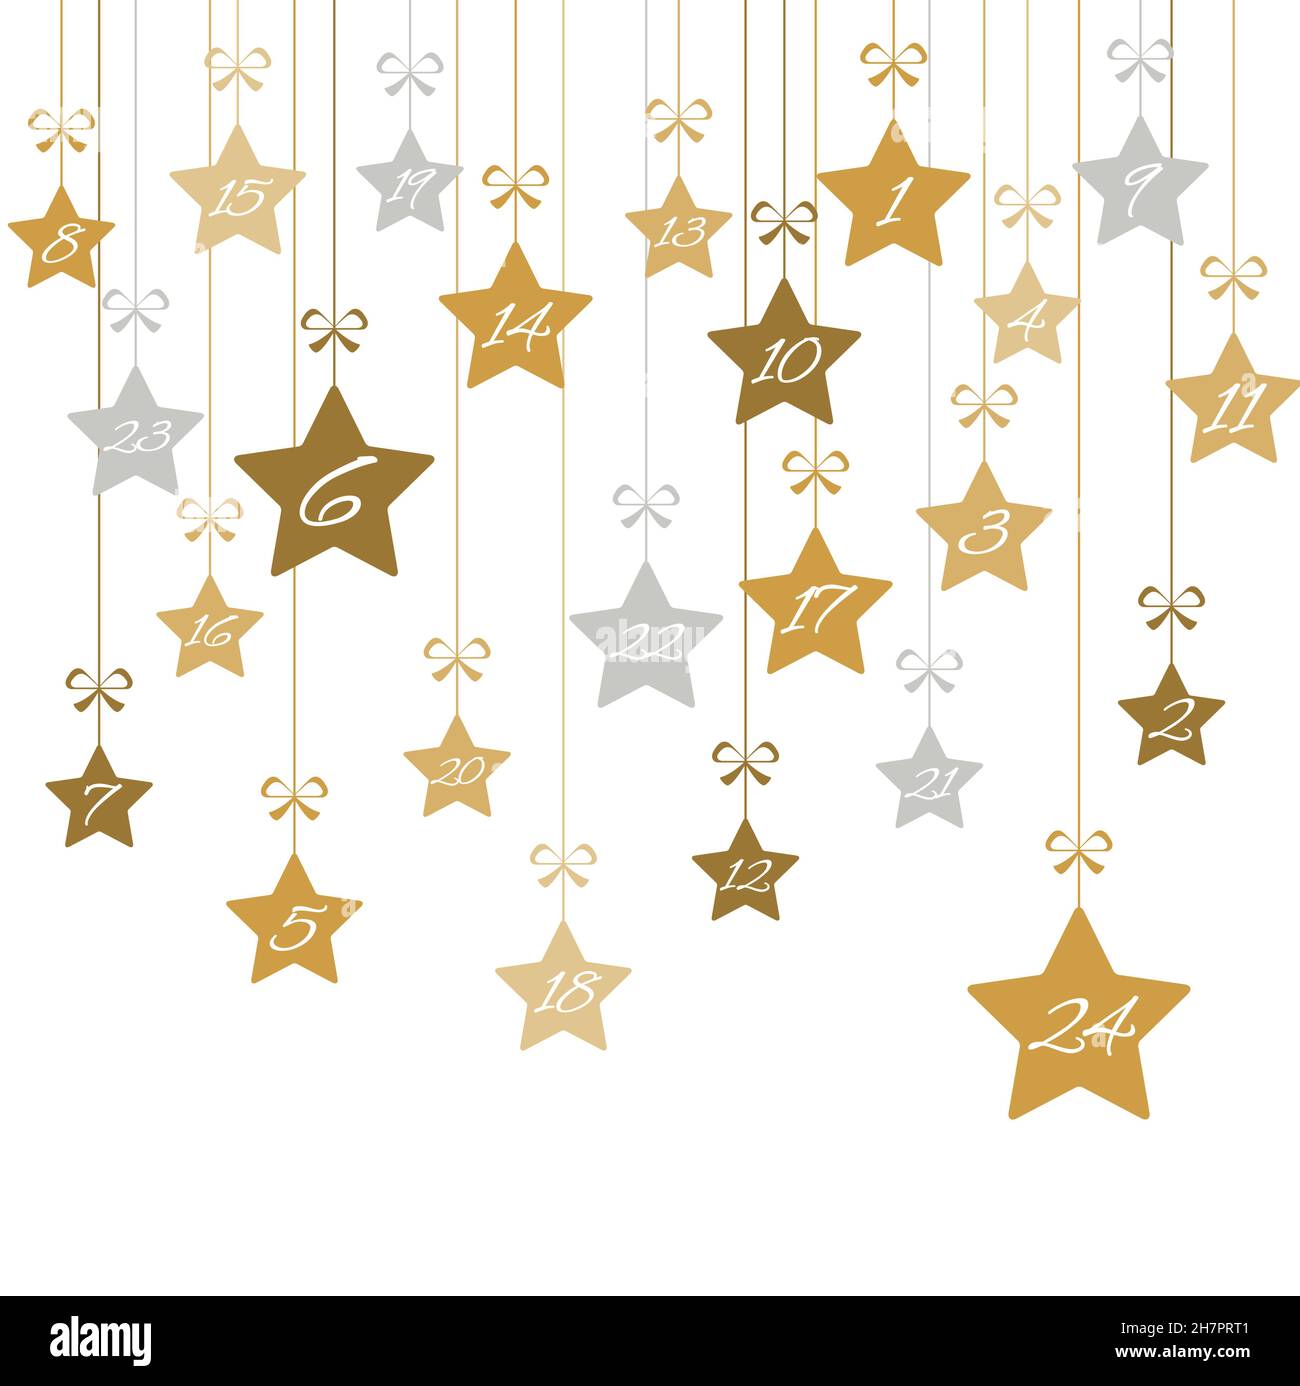 suspension des étoiles de noël couleur or avec les numéros 1 à 24 montrant le calendrier de l'avent pour les concepts de noël et d'hiver, fond blanc Illustration de Vecteur